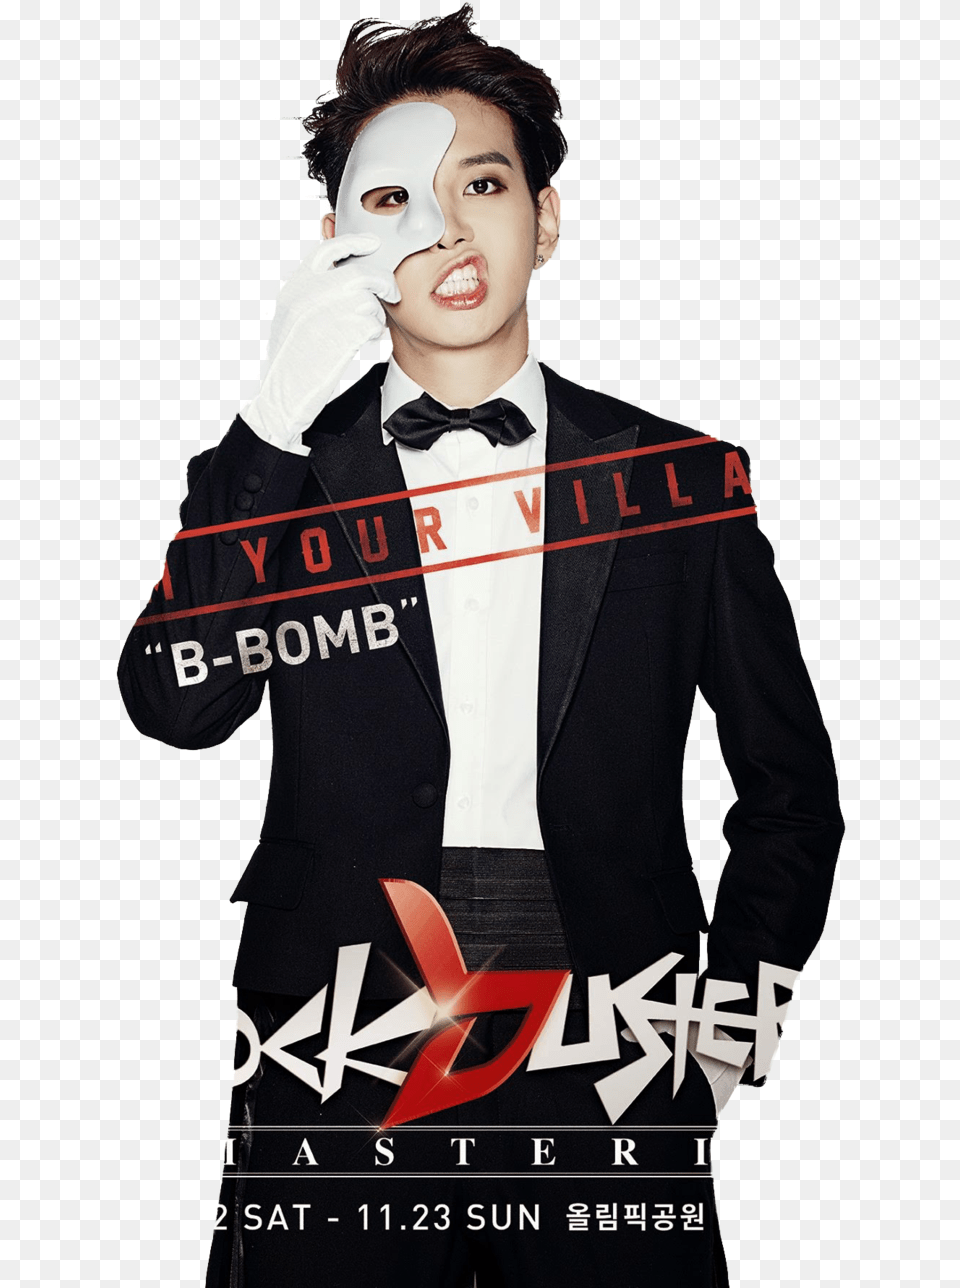 Block B Ukwon Joker, Clothing, Formal Wear, Glove, Advertisement Free Transparent Png